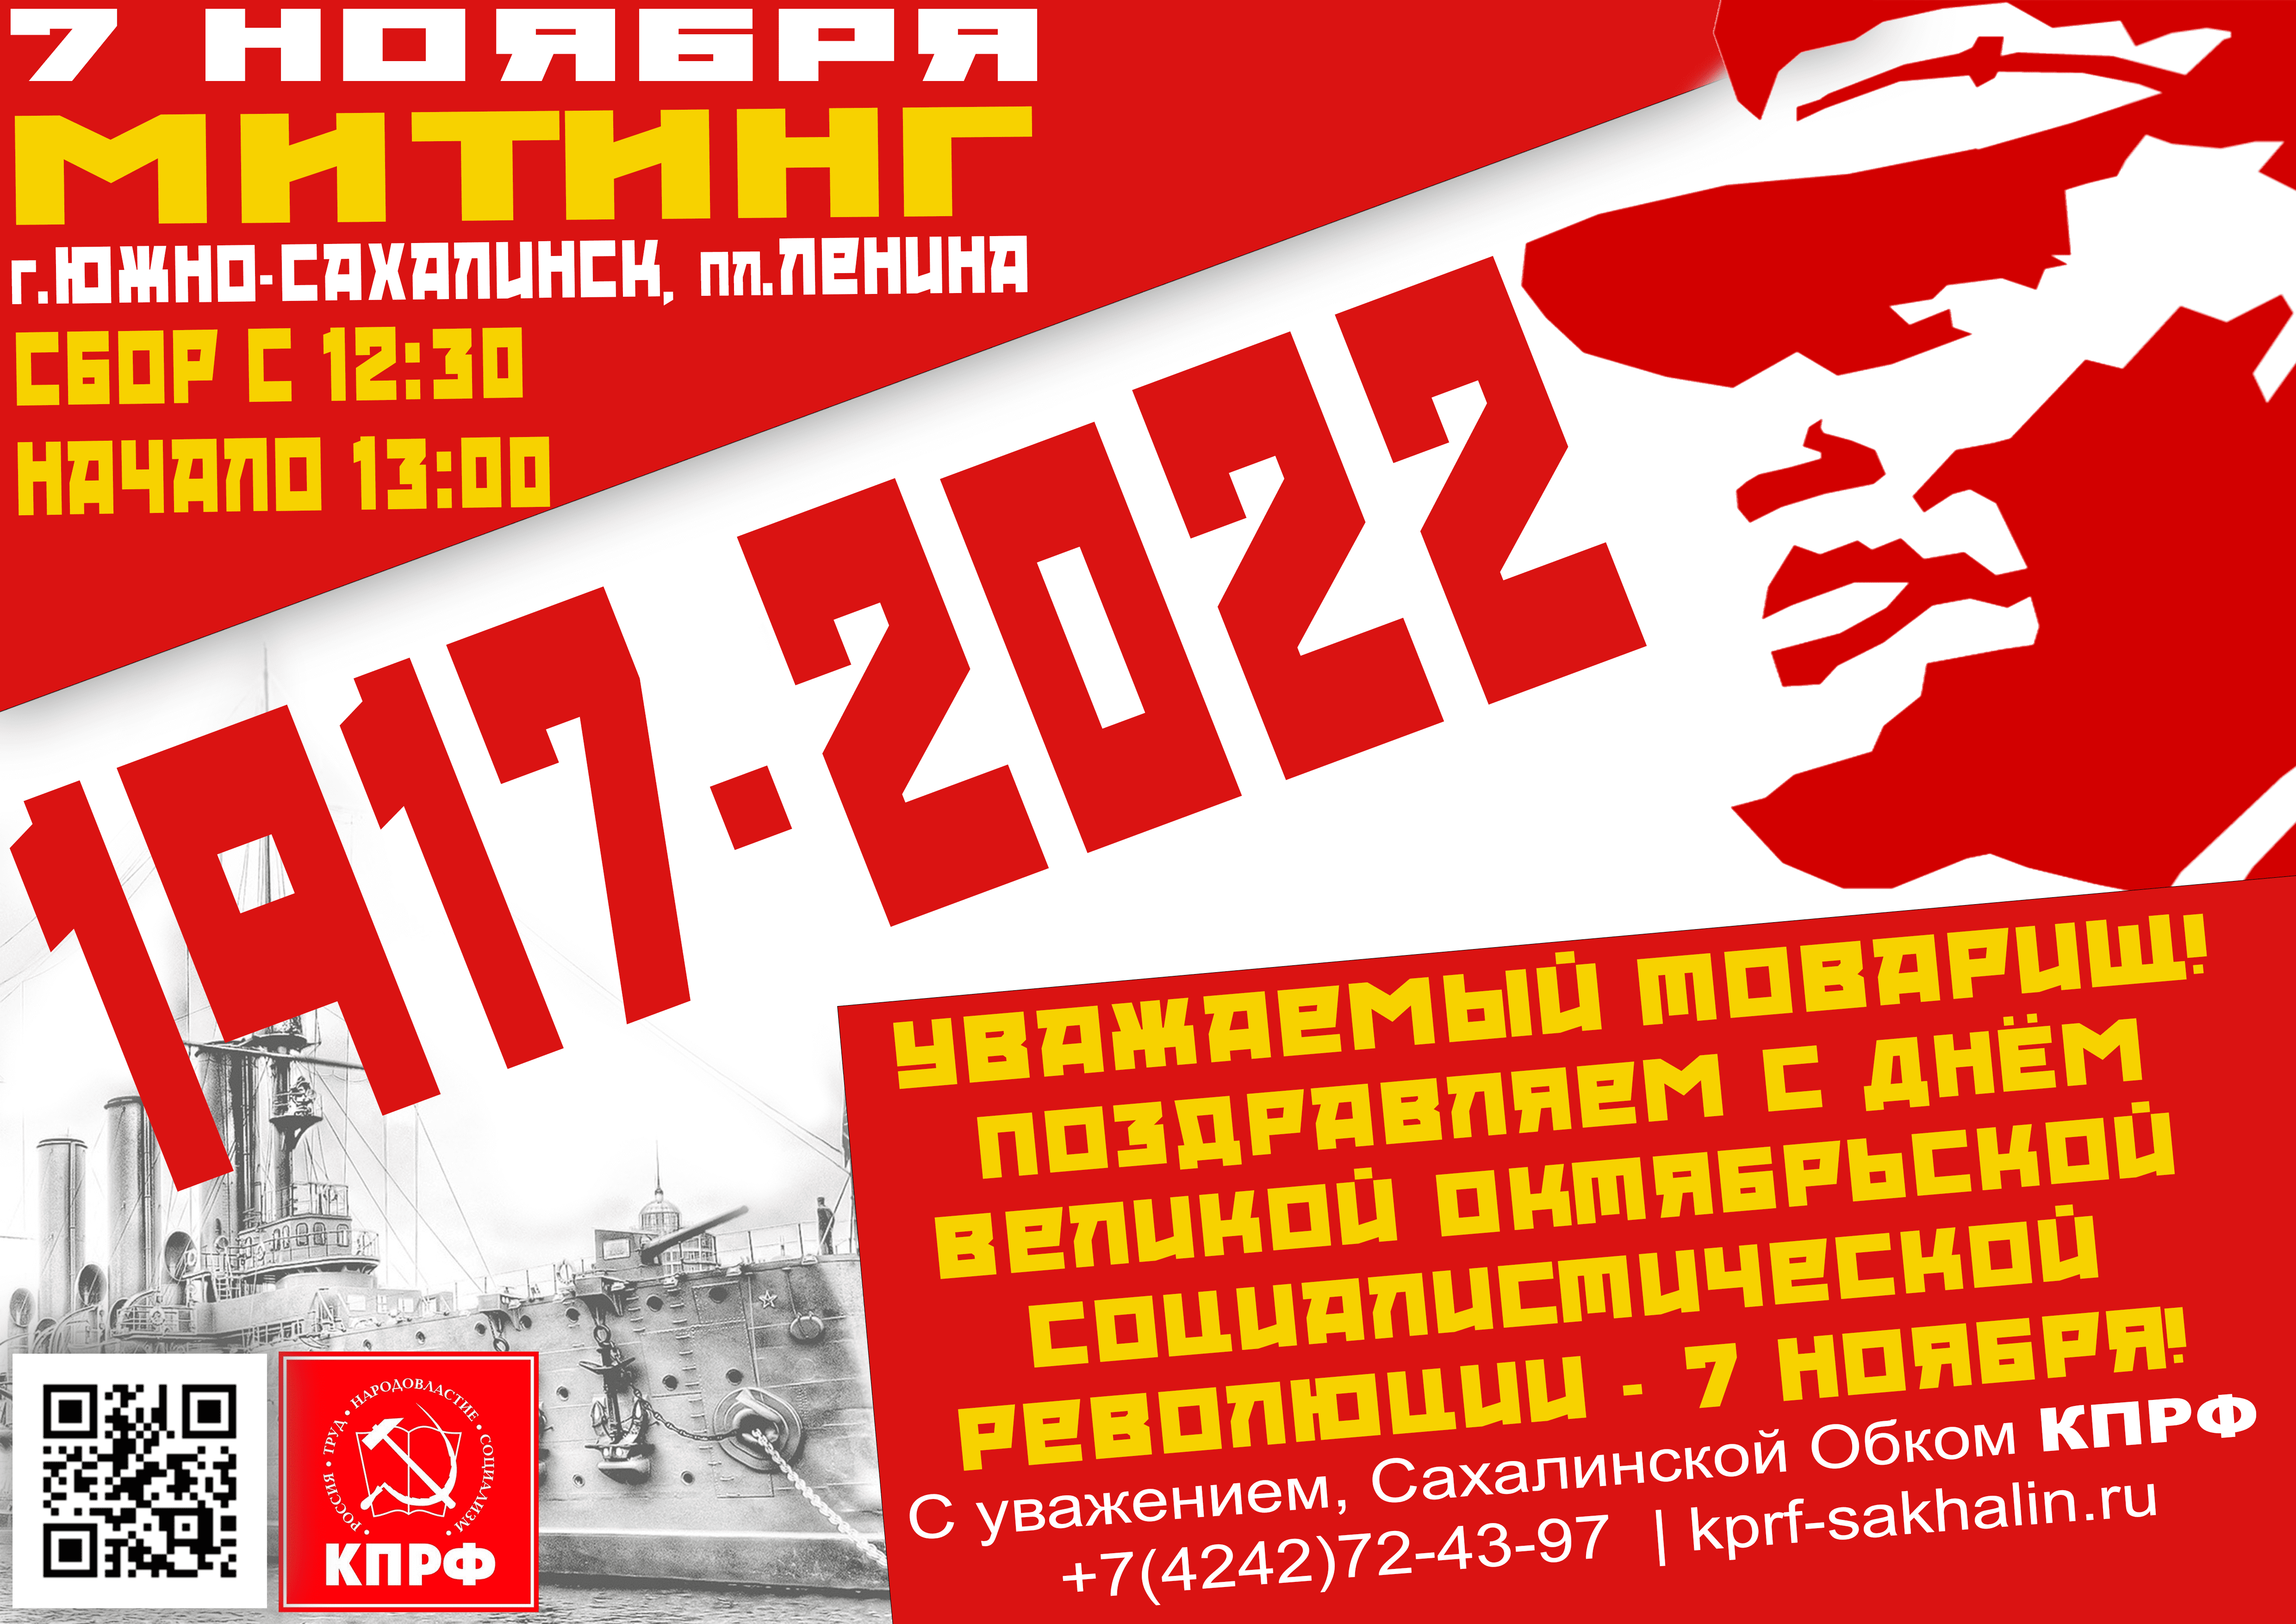 День Великой Октябрьской социалистической революции